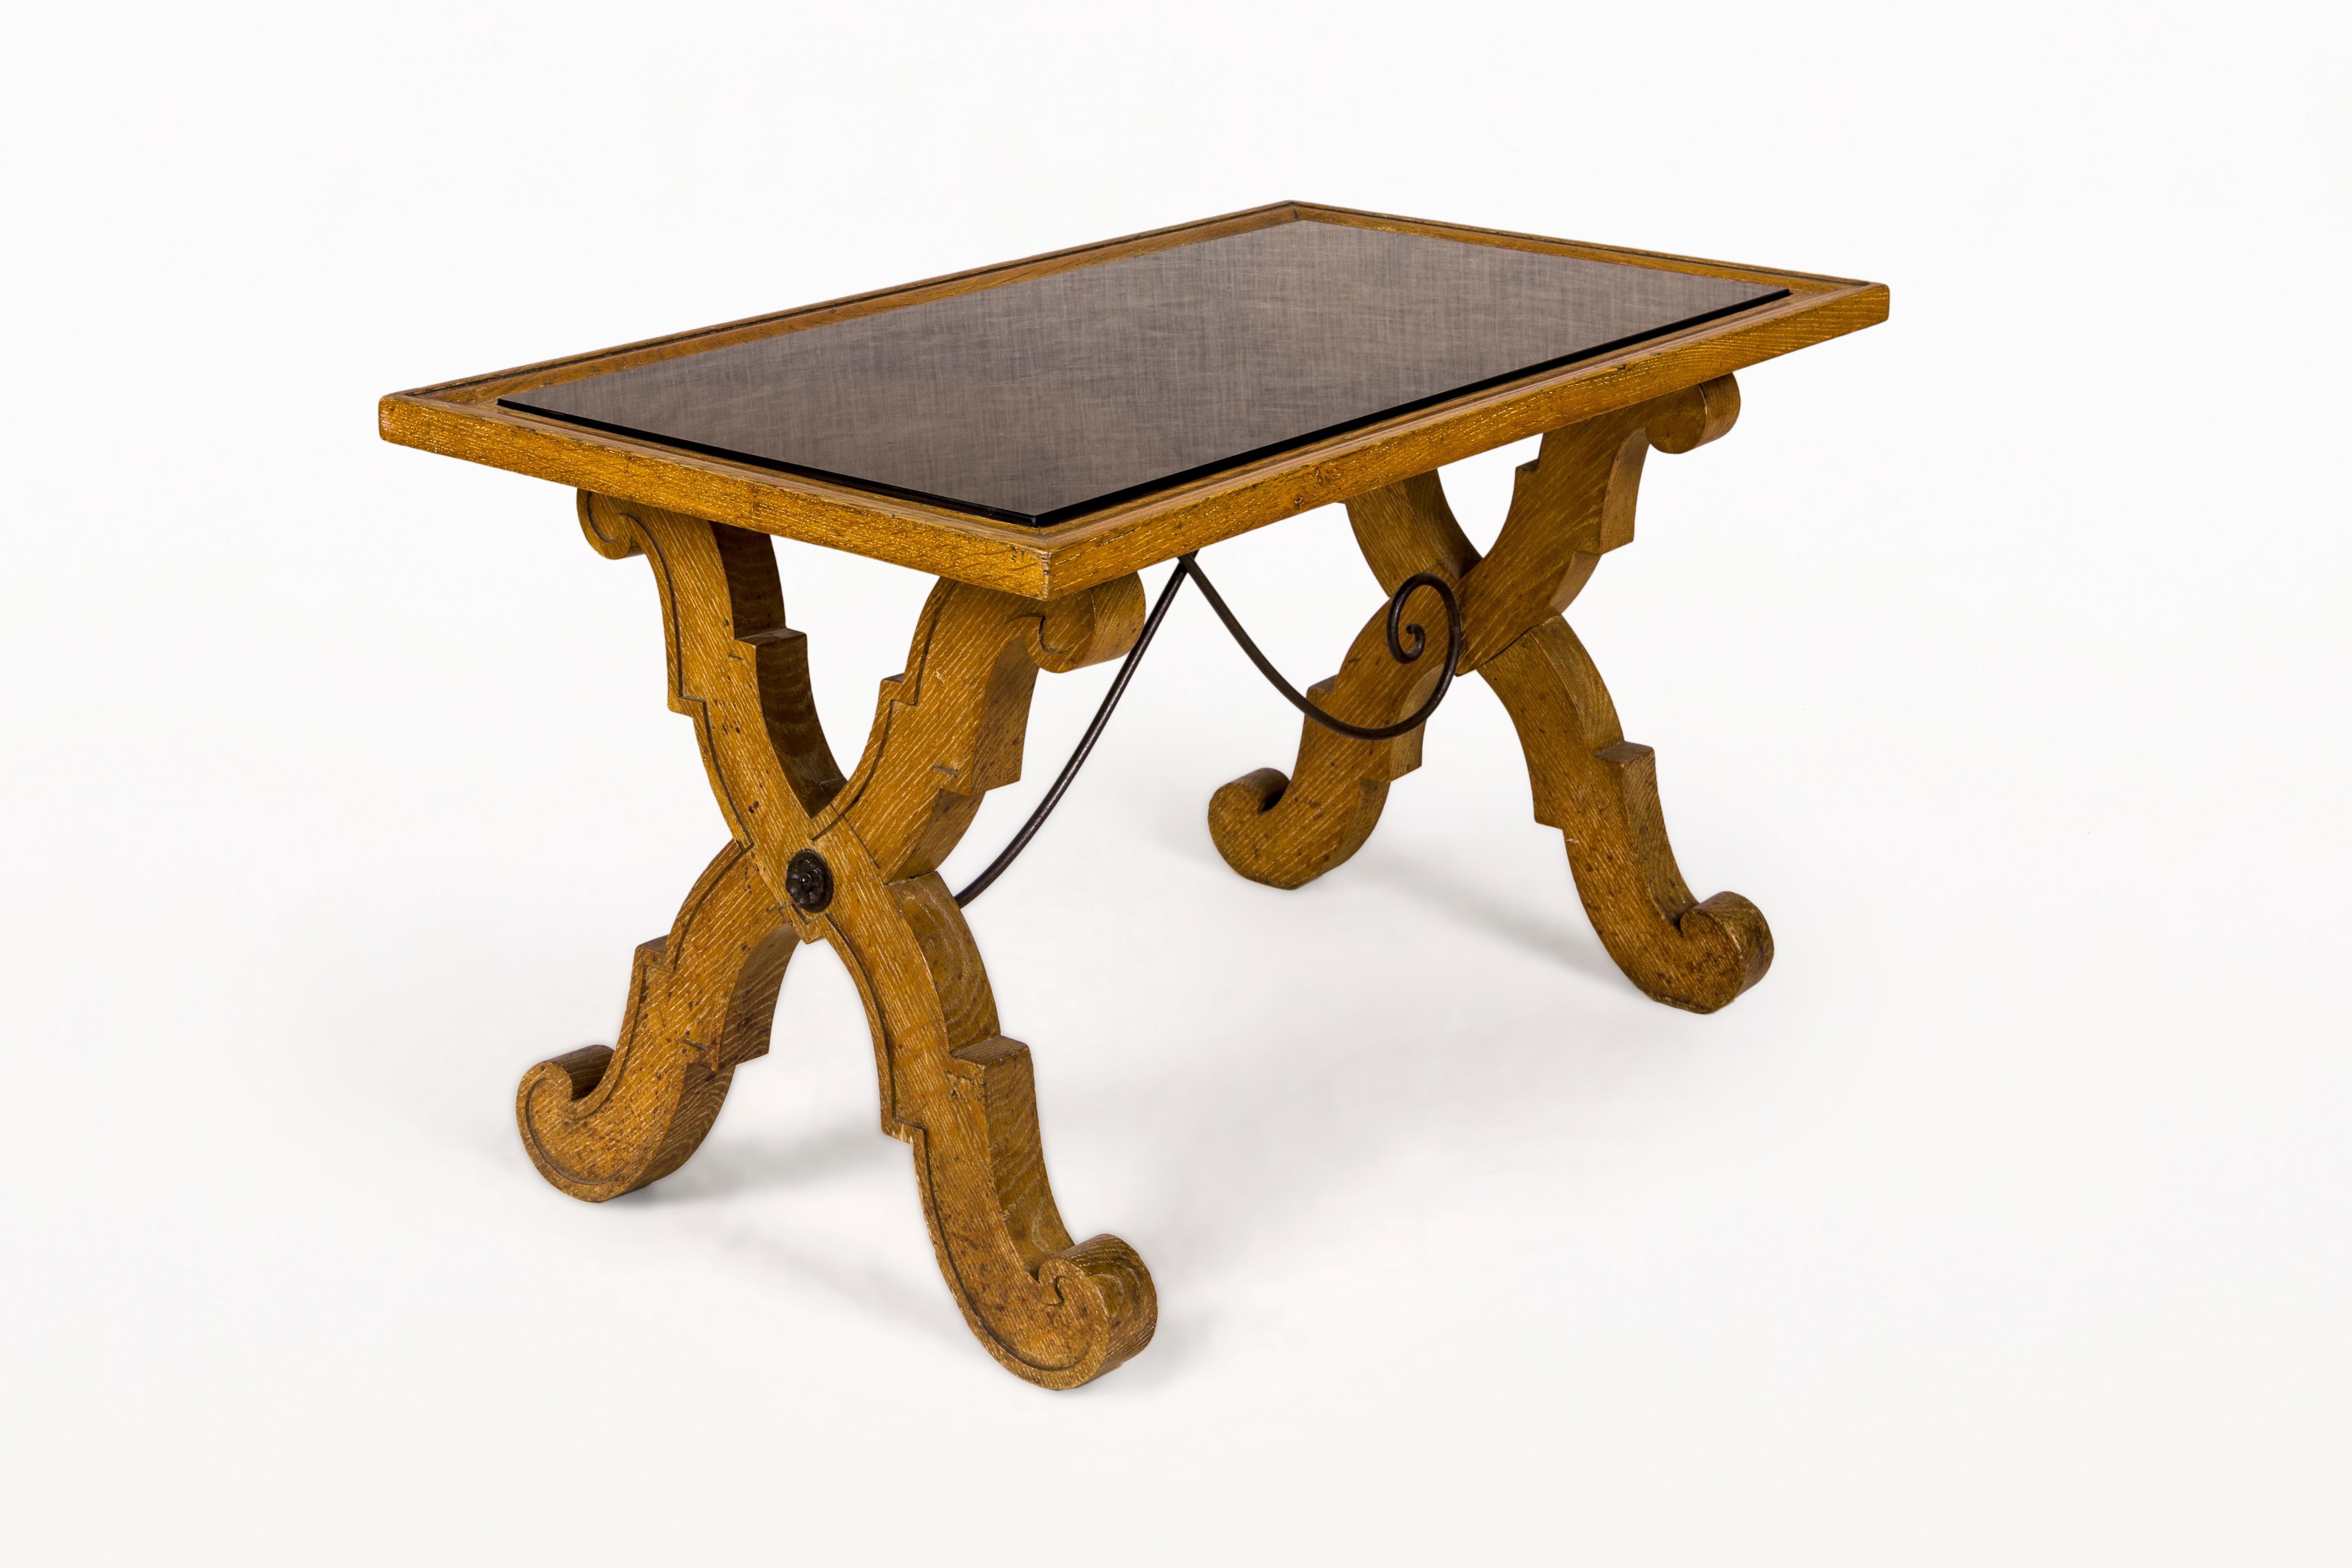 DESCRIPTION : Table basse Art déco de Jean-Charles Moreux en bois de chêne.  chêne et verre opalin.

CONDITION : Très bon état vintage. Usure conforme à l'âge et à l'utilisation.

DIMENSIONS : Hauteur : 52cm (20.47in)  Largeur : 90cm (35.43in)